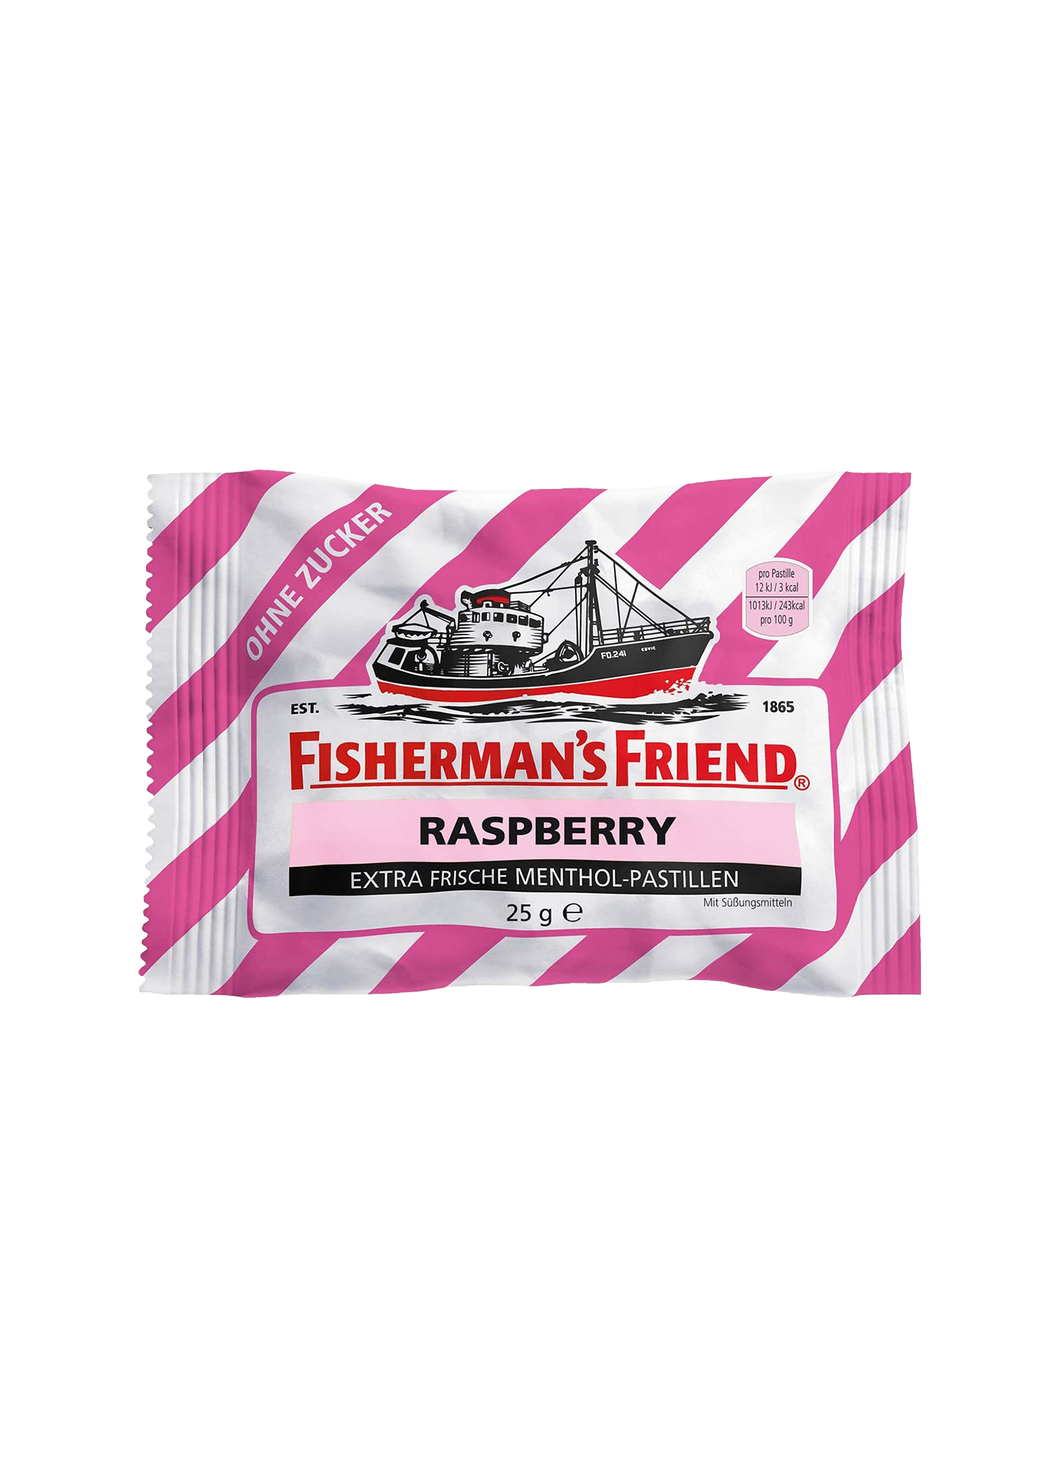 Fisherman's Friend Sugar Free Extra Frische Menthol Pastillen Lozenges Raspberry 25g